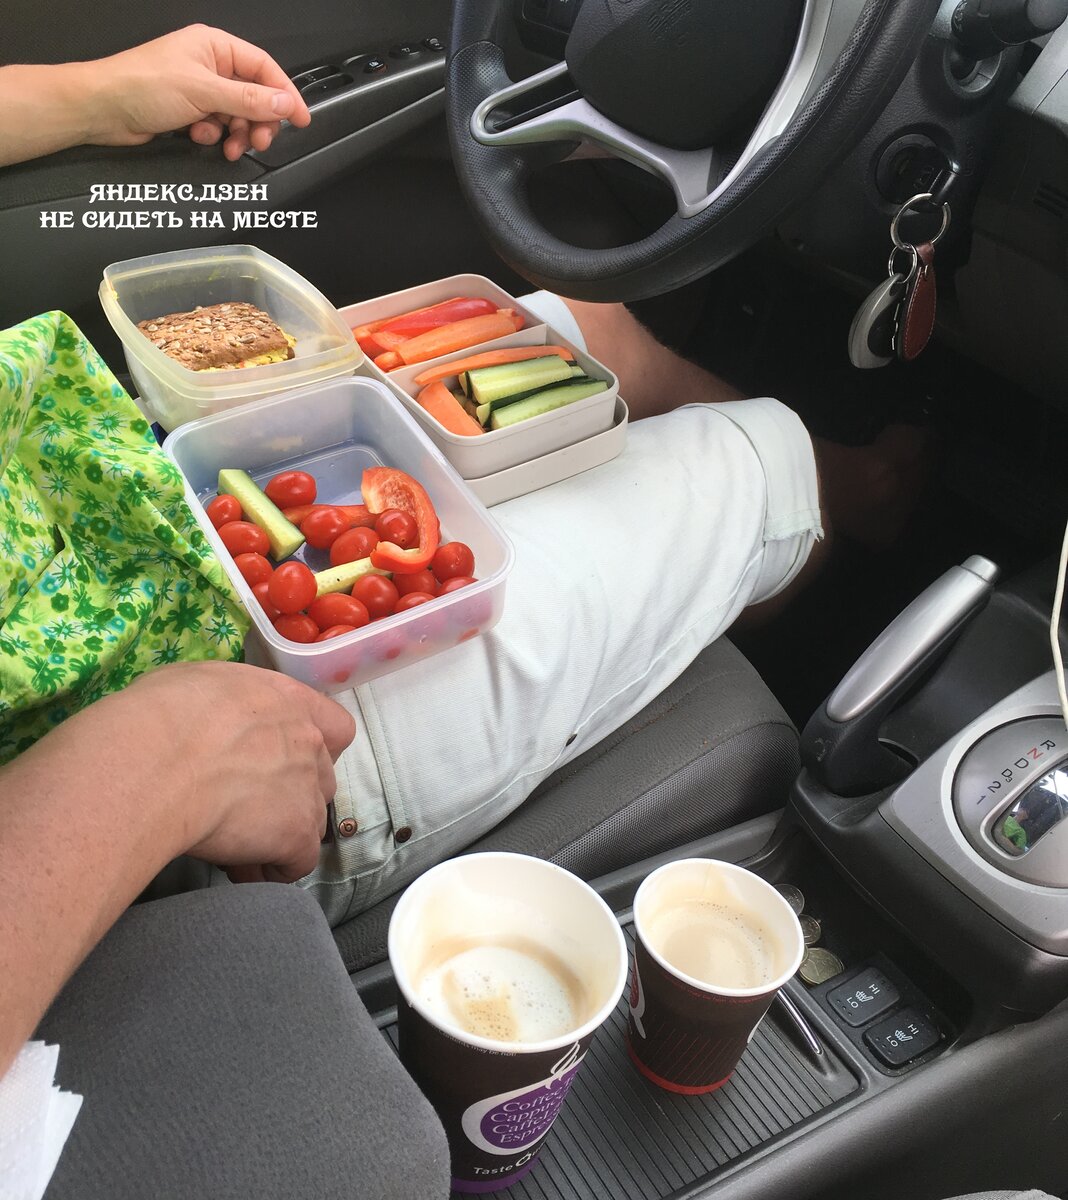 Собрать еду в дорогу. Еда в машине. Перекус в дорогу. Полезные вещи для автомобиля. Перекус в автомобиле.